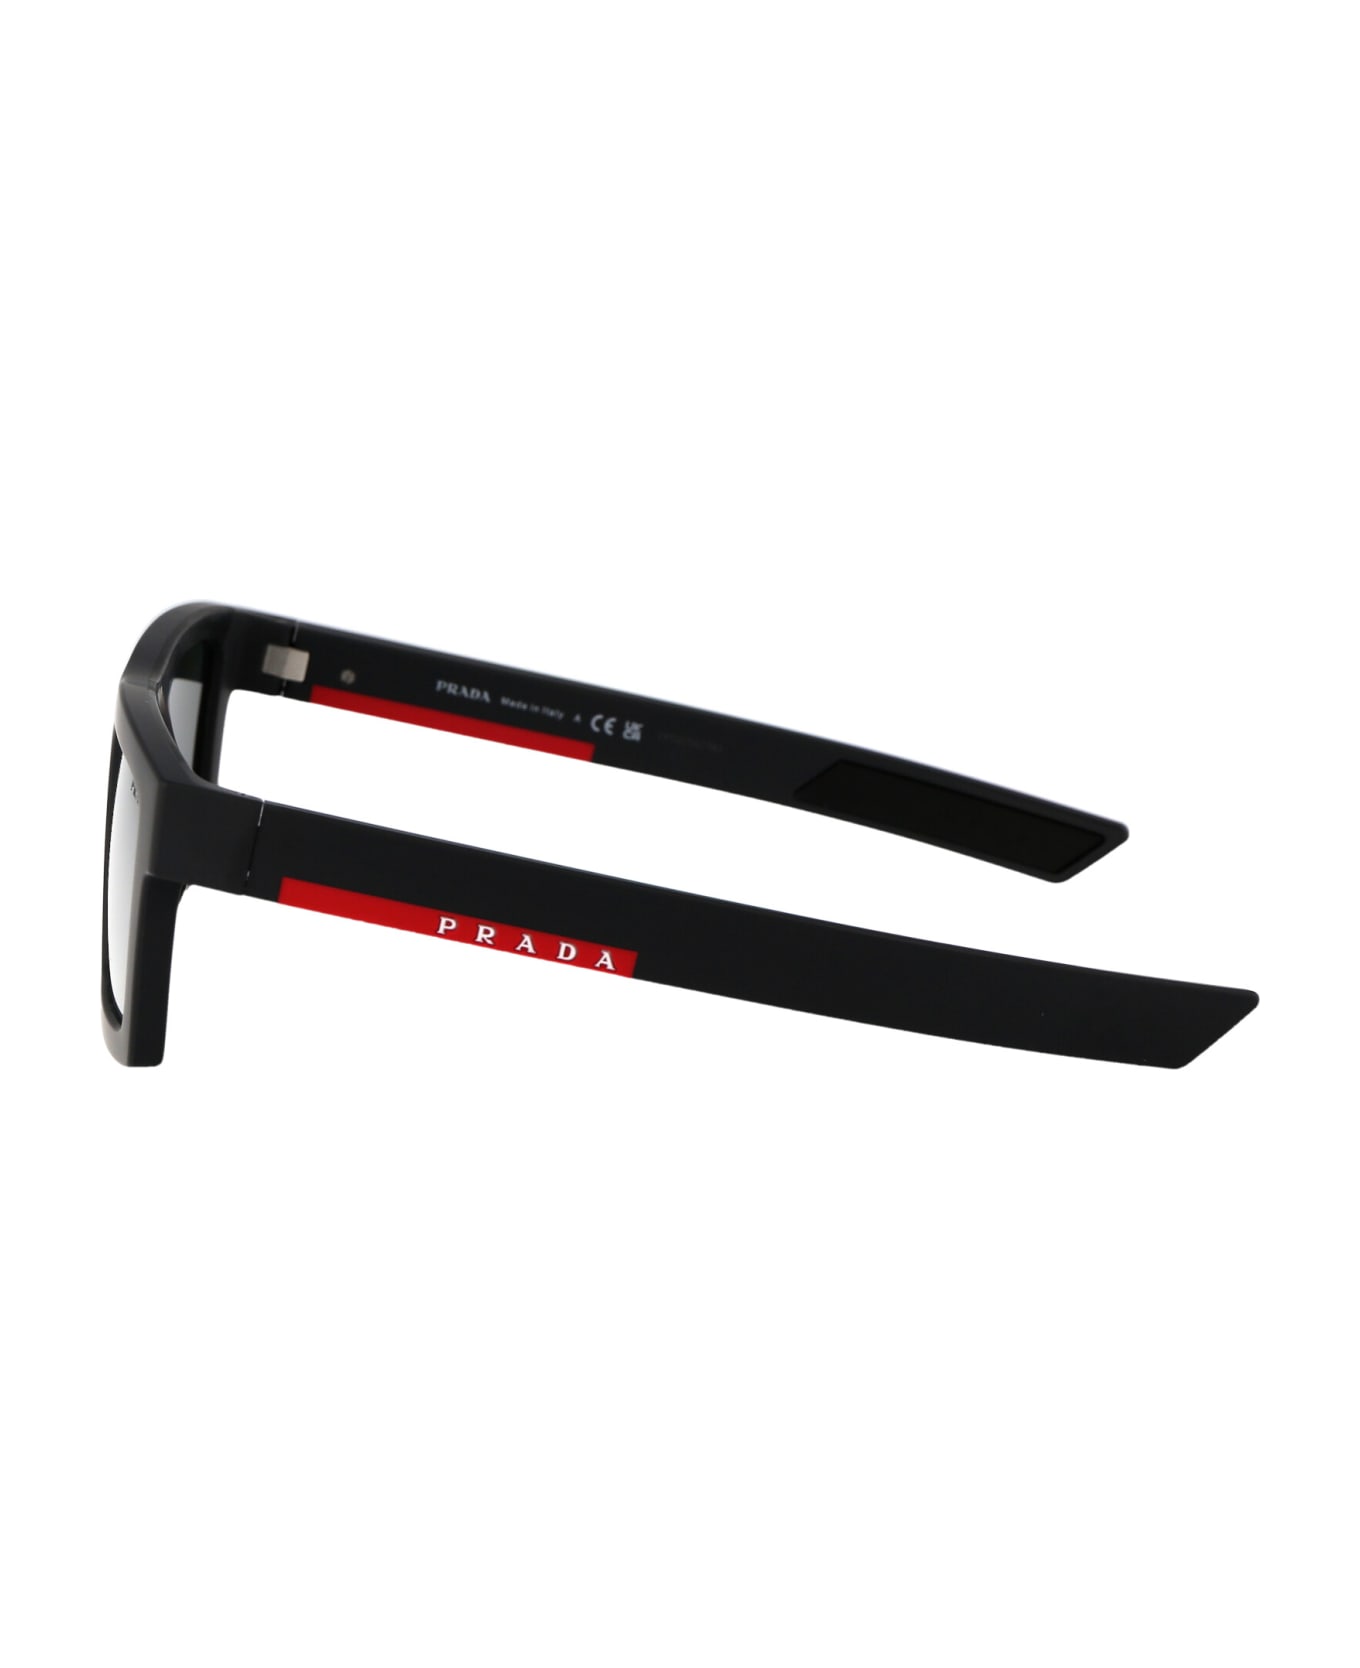 Prada Linea Rossa 0ps 02zsu Sunglasses - 18K60A Metal Grey